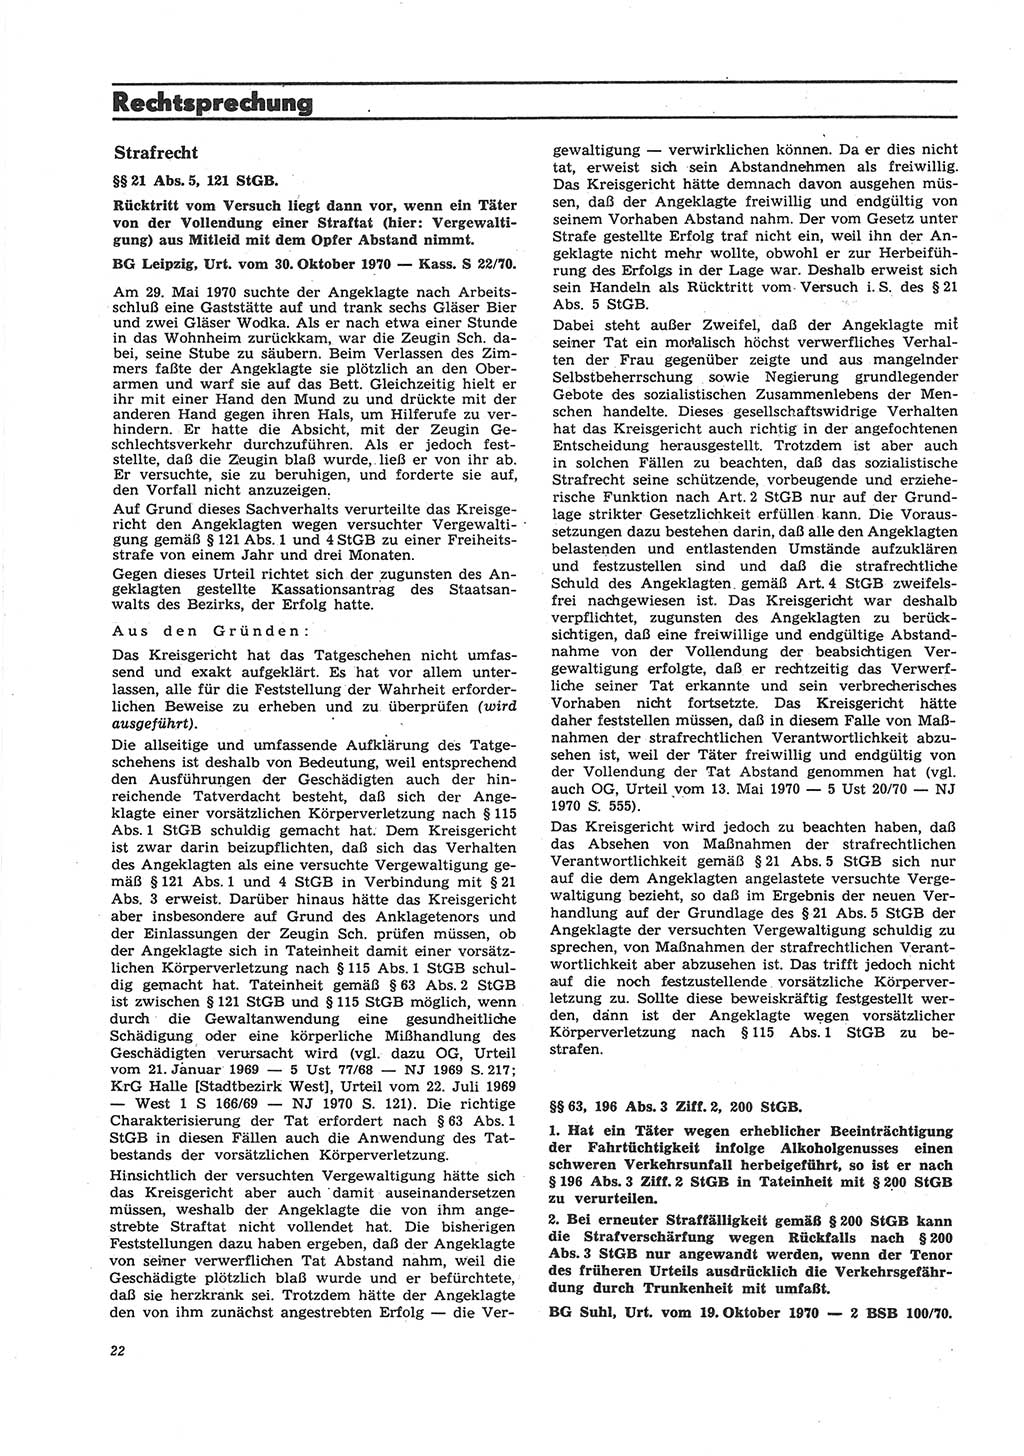 Neue Justiz (NJ), Zeitschrift für Recht und Rechtswissenschaft [Deutsche Demokratische Republik (DDR)], 26. Jahrgang 1972, Seite 22 (NJ DDR 1972, S. 22)